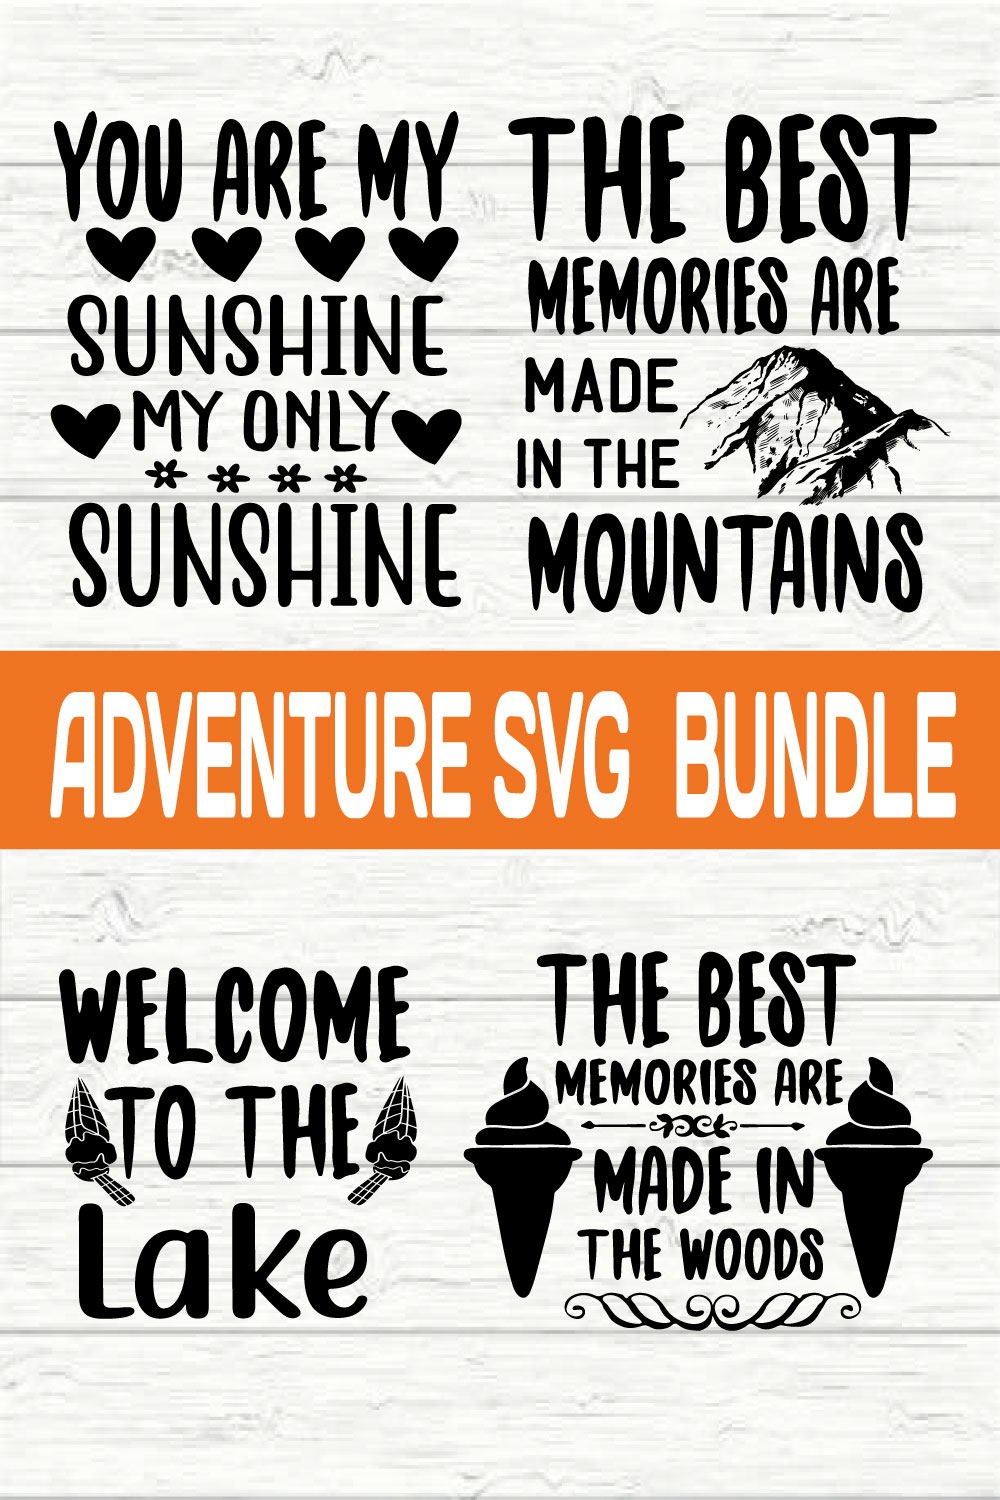 Adventure Svg Bundle vol 8 pinterest preview image.